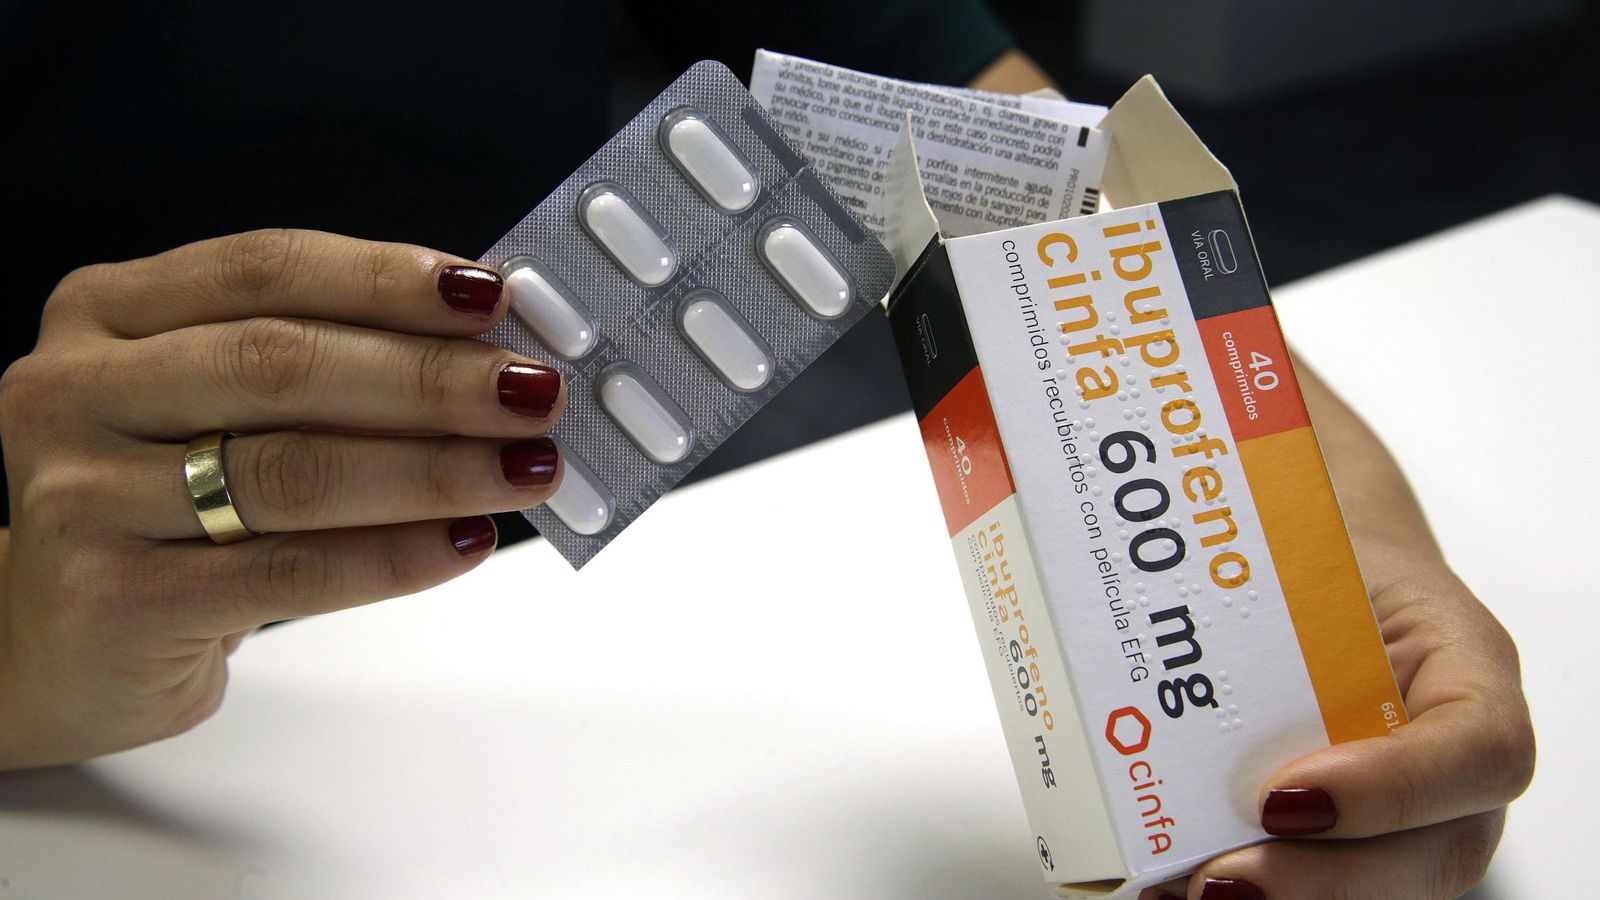 Foto: Una mujer retira una tableta de pastillas de una caja de ibuprofeno. (EFE)